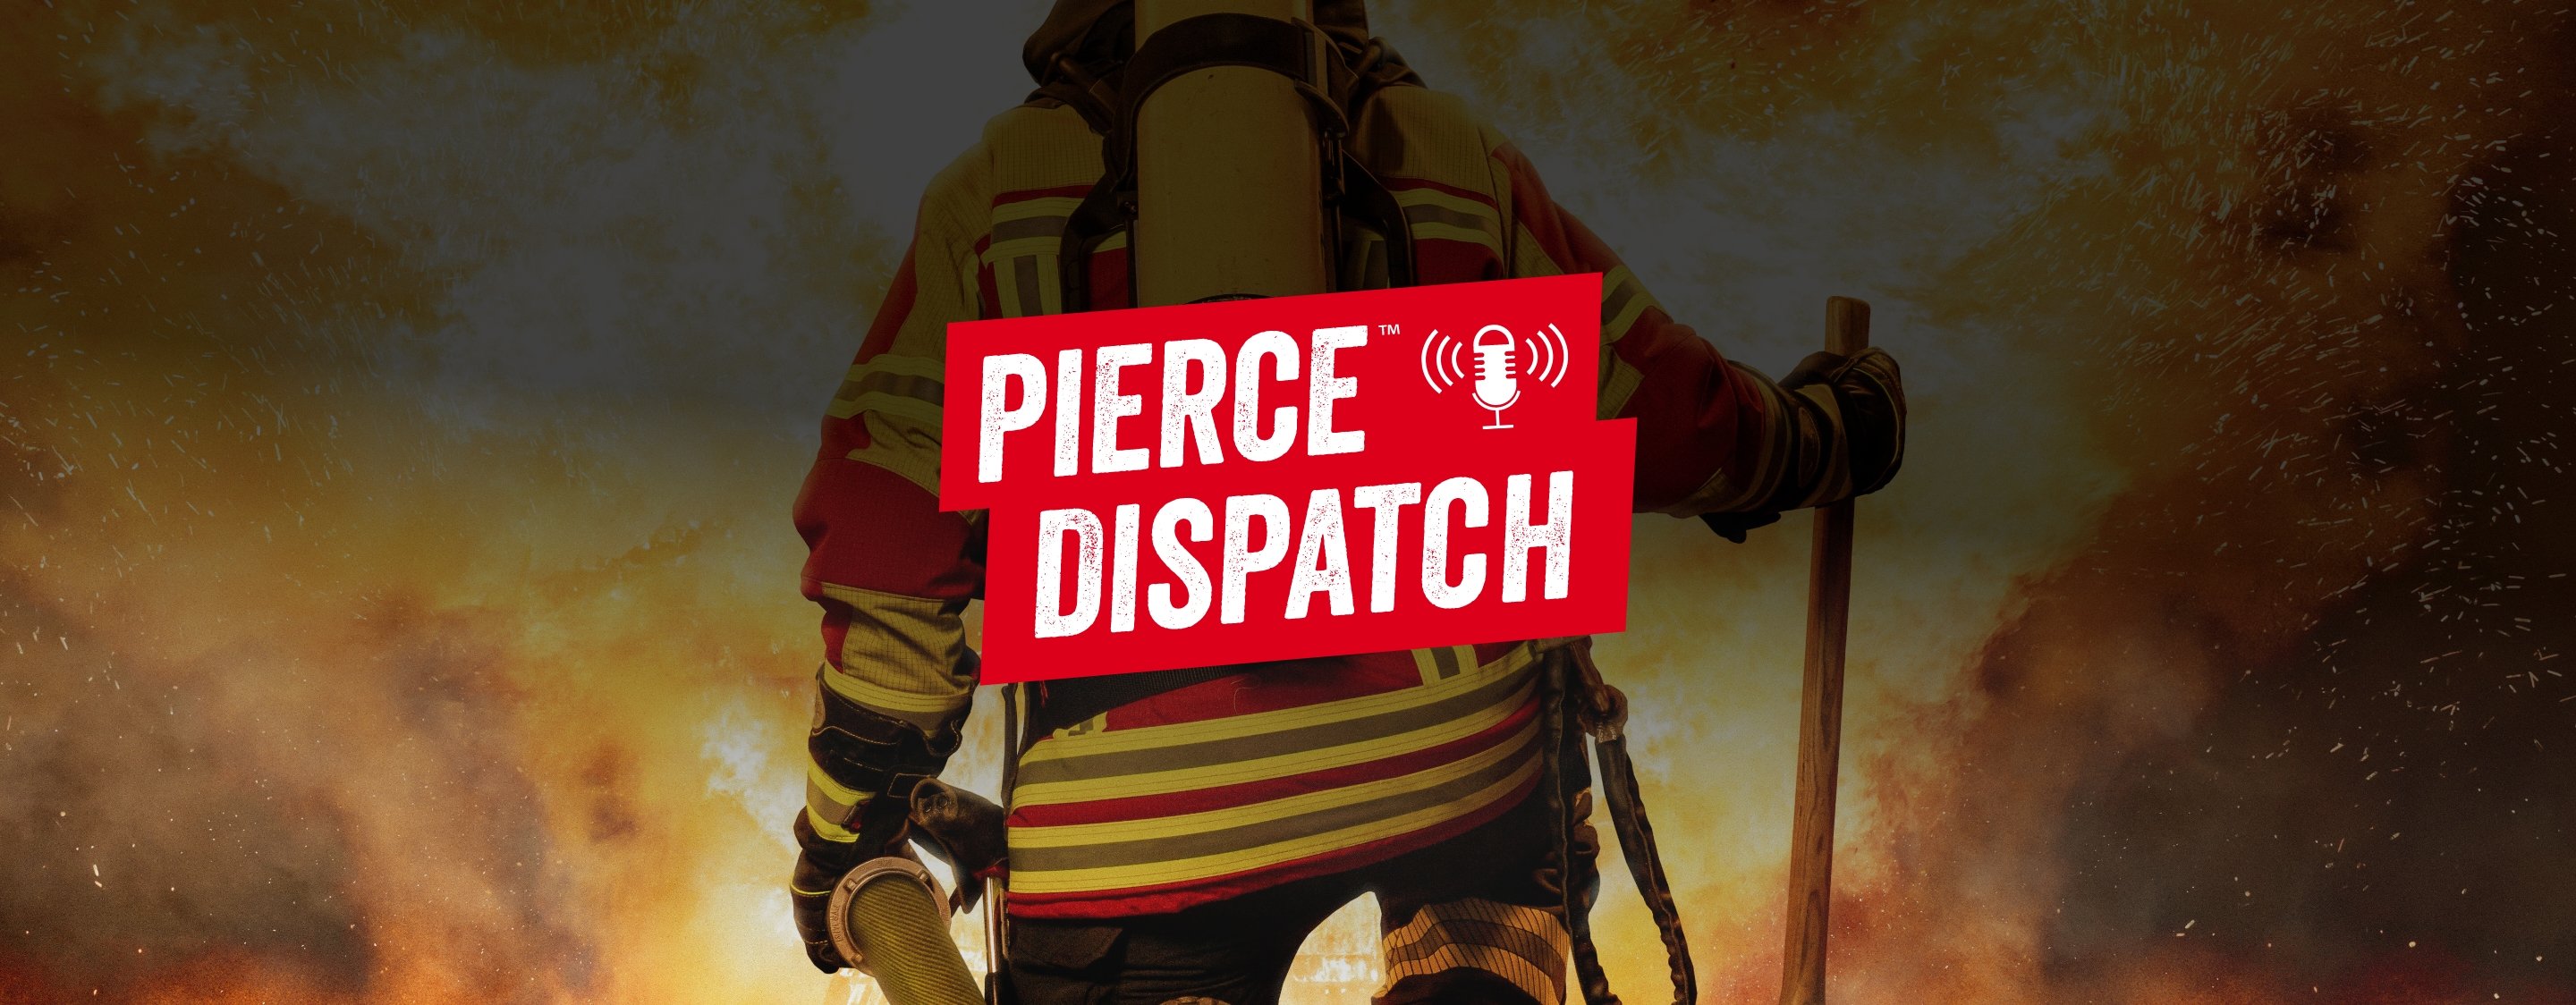 PIE-dispatch-banner (2)